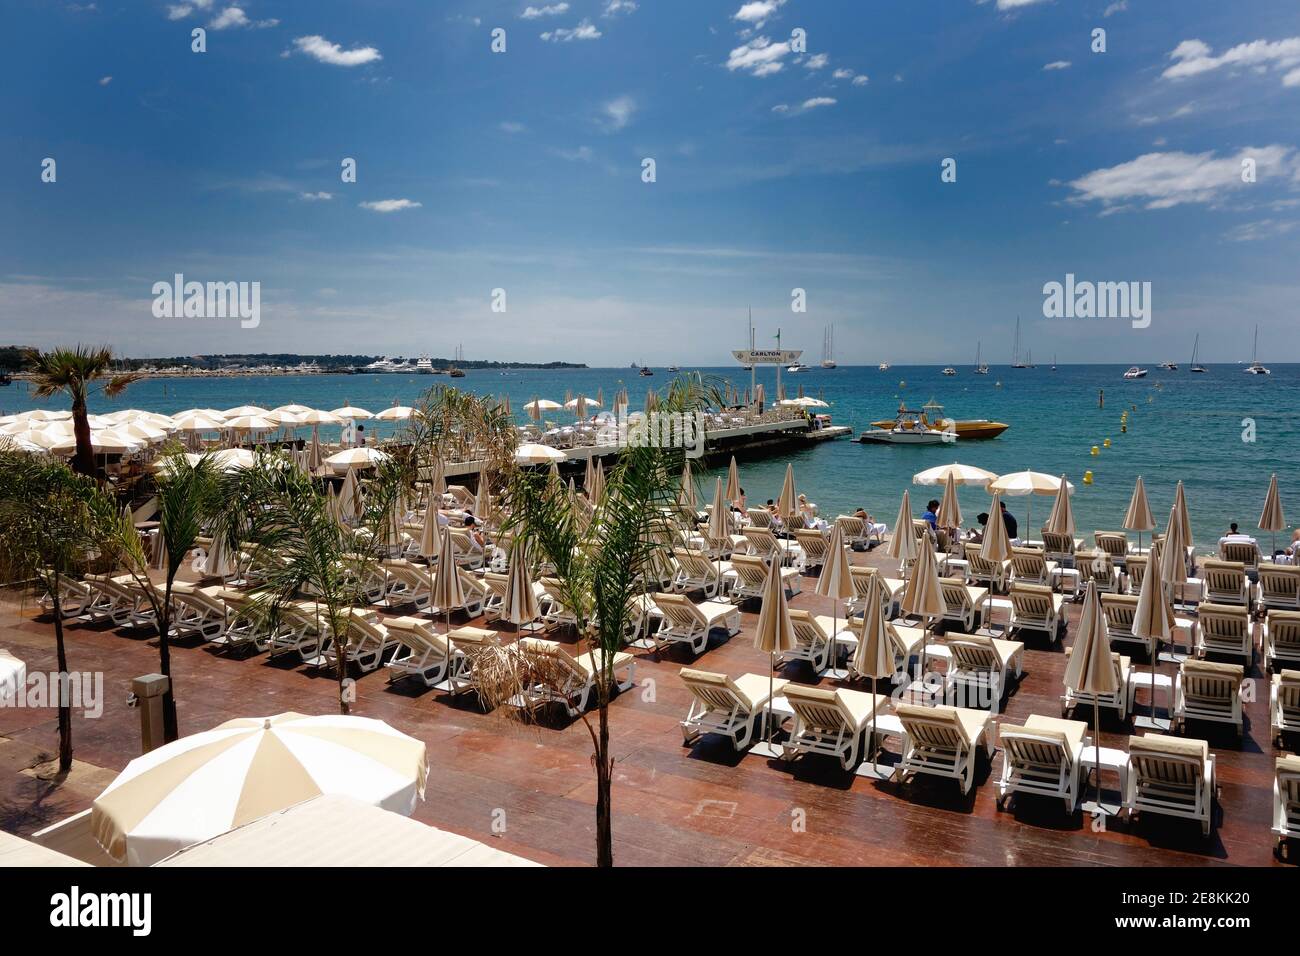 Plage de Cannes avec chaises longues prêtes pour la journée Banque D'Images